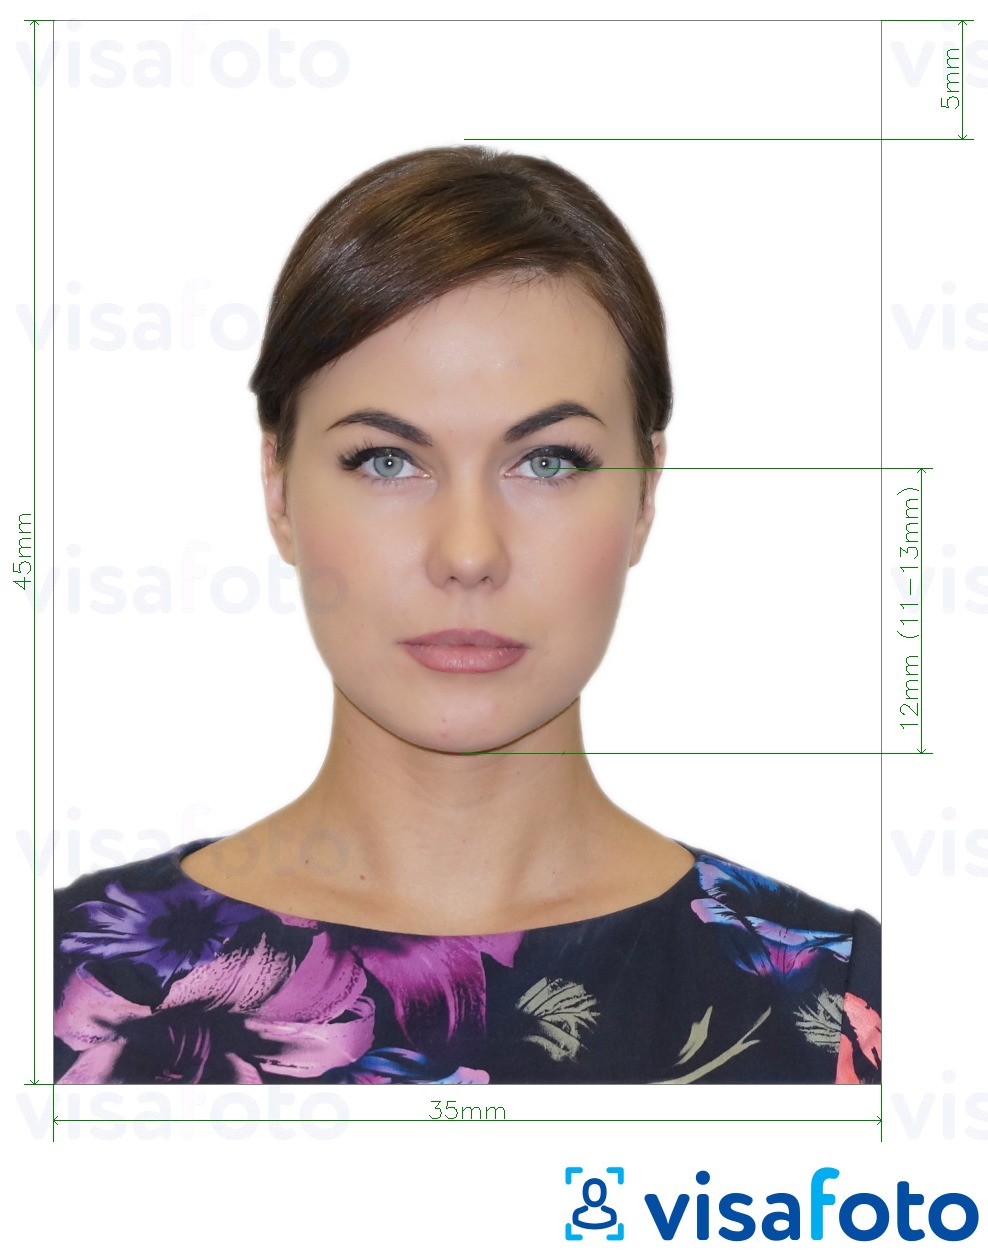 Przykład zdjęcia dla Rosja Paszport (ocze na dno brody 12 mm), 35x45 mm z podaniem dokładnego rozmiaru.